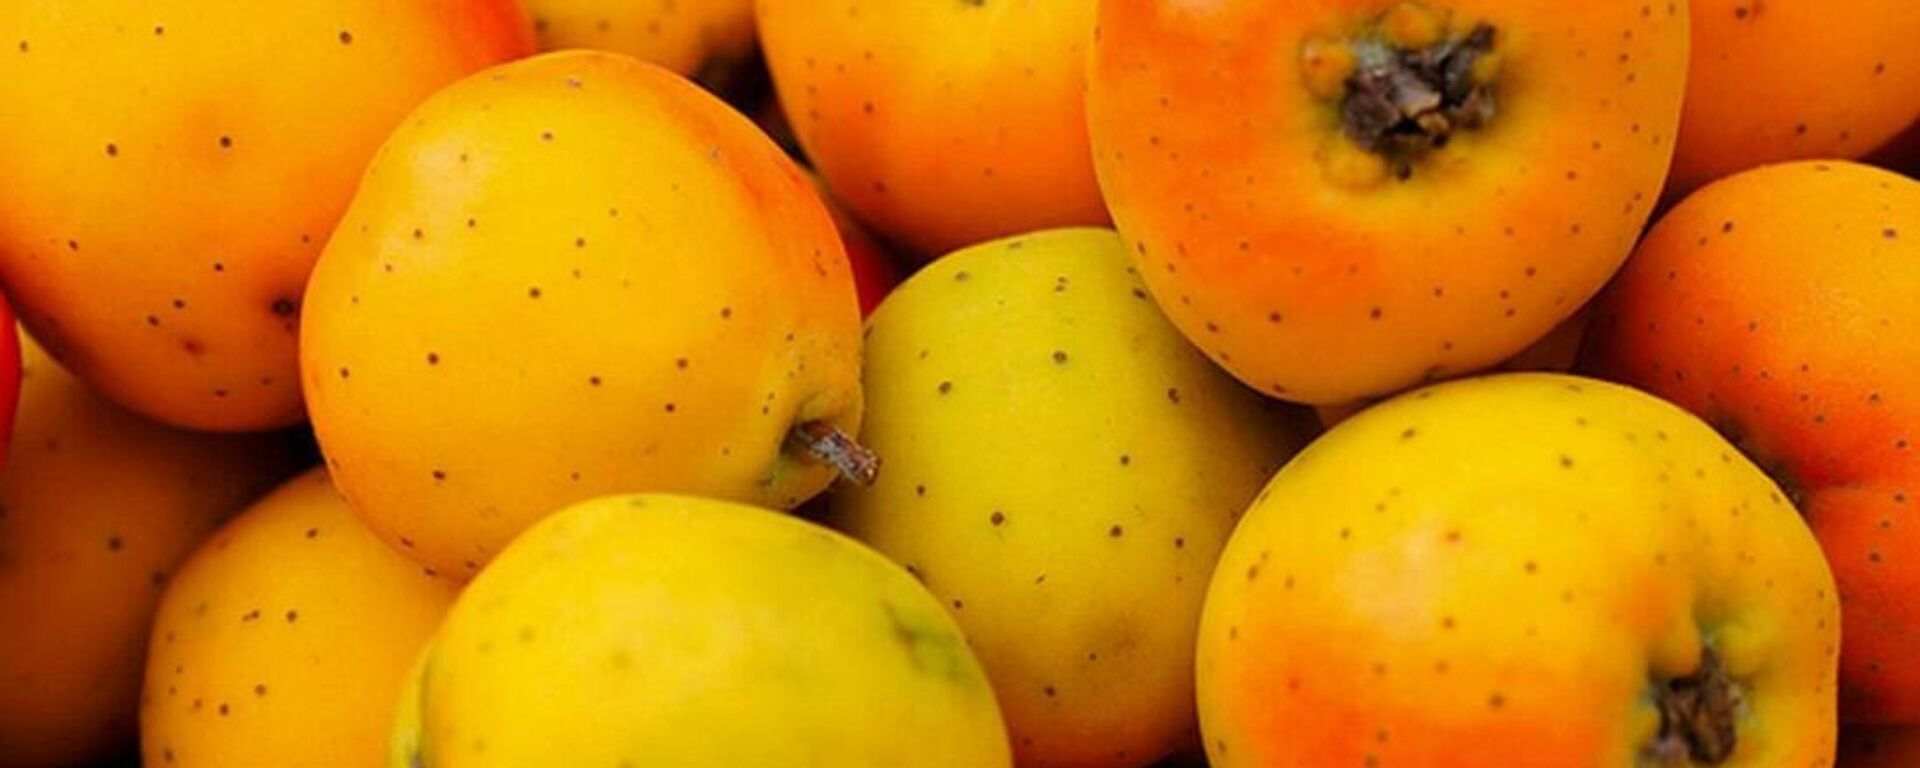 El tejocote es una fruta de temporada que se consume principalmente en temporada navideña  - Sputnik Mundo, 1920, 23.11.2021